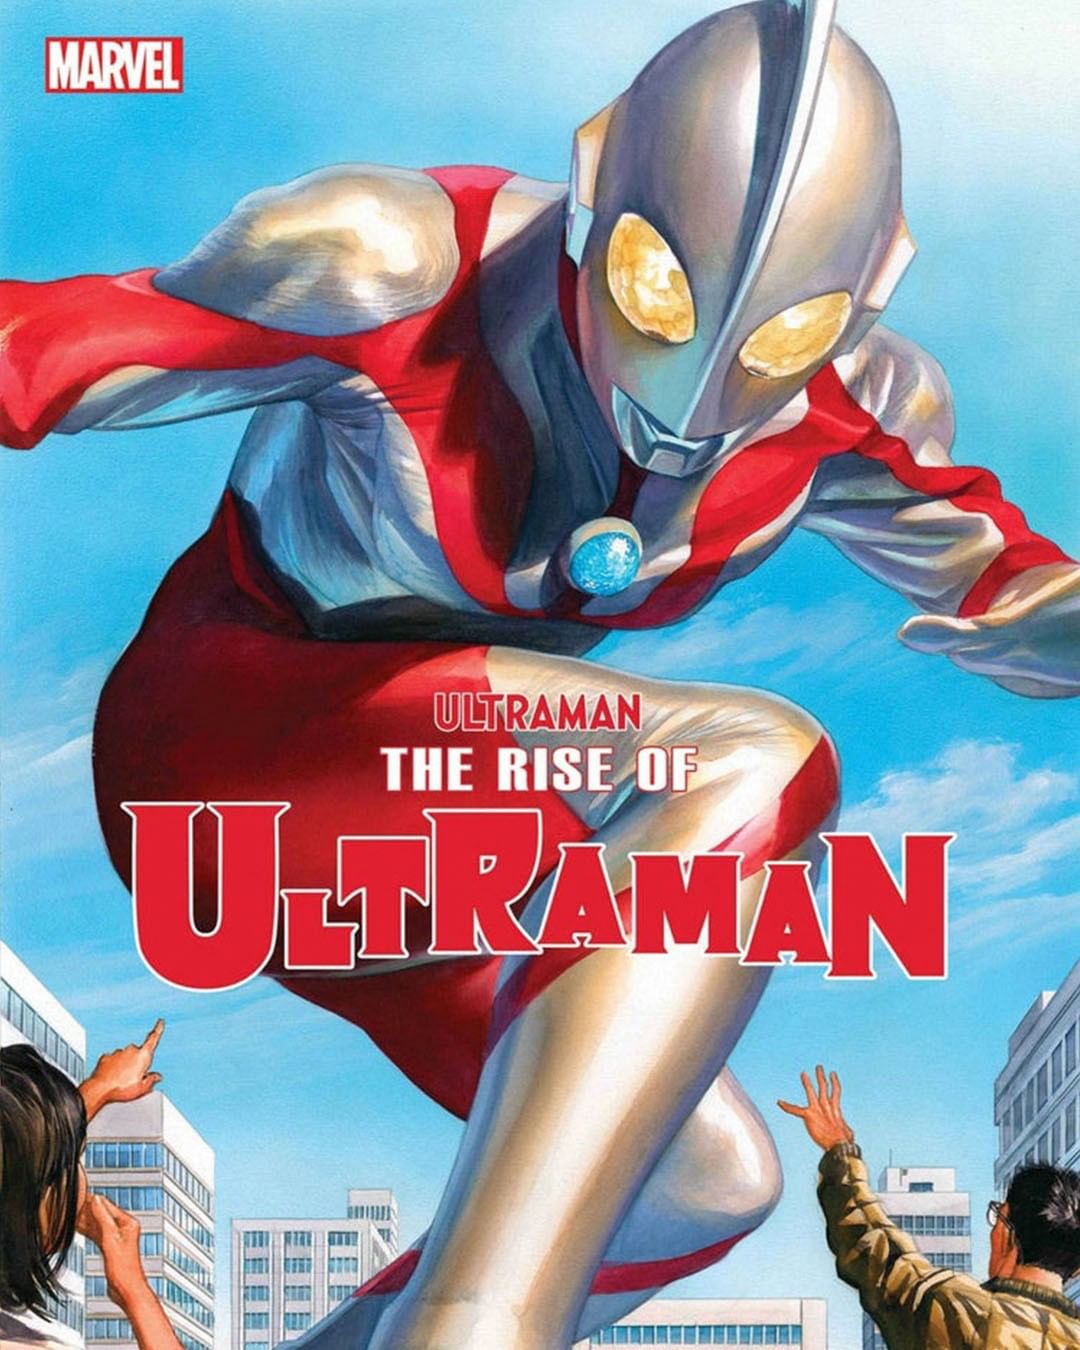 Ultraman và Marvel là hai thương hiệu nổi tiếng trên toàn cầu trong thể loại siêu anh hùng. Hãy xem album ảnh này để thấy sự khác biệt và đặc sắc của từng thương hiệu này.